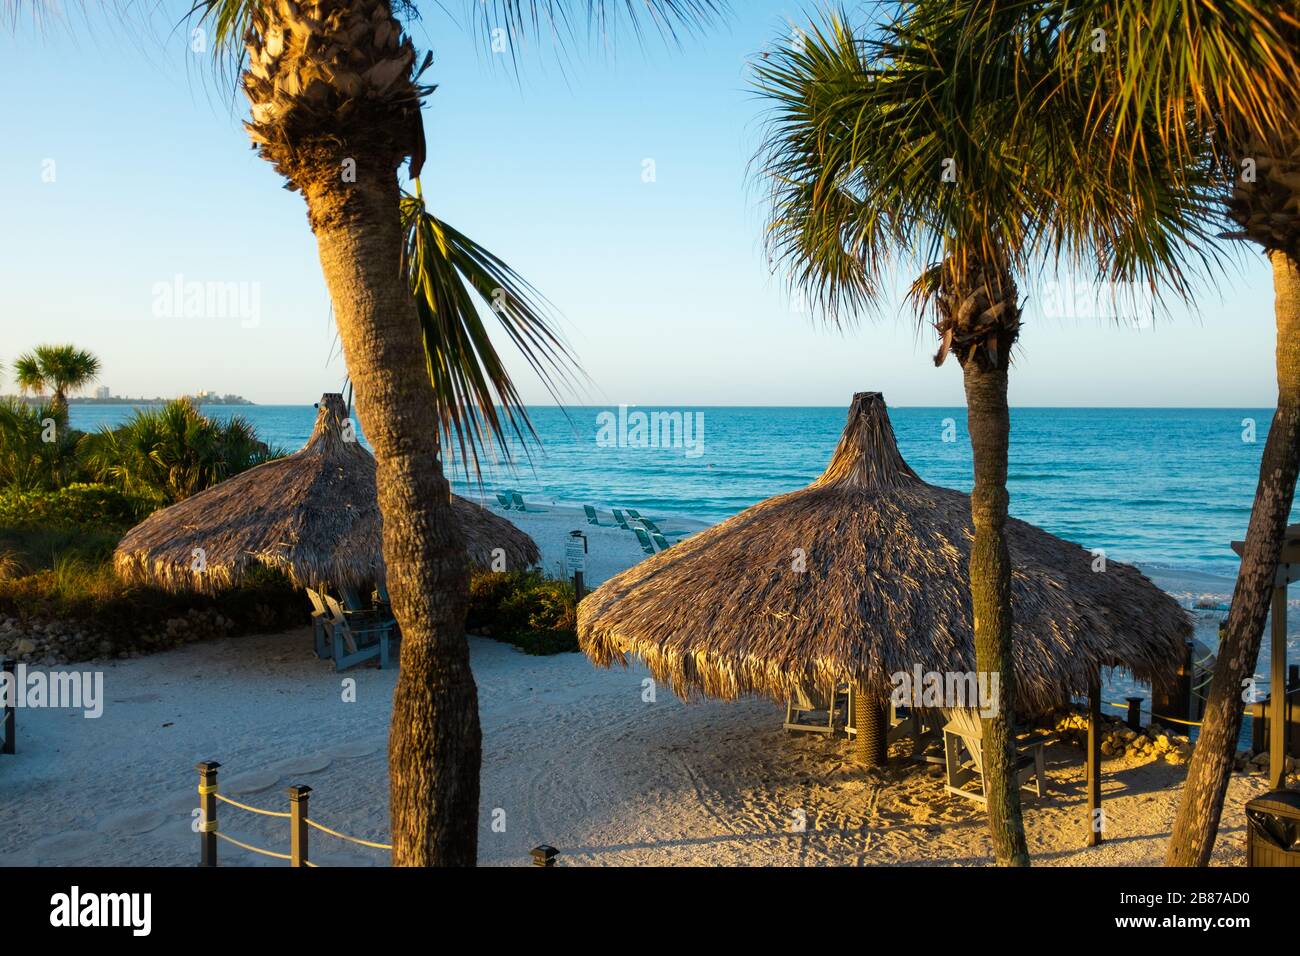 Lido Beach, Floride, États-Unis - 20 mars 2020. Les huttes de palmier sont baignées de lumière tôt le matin lorsque le soleil se lève sur le golfe du Mexique. Banque D'Images